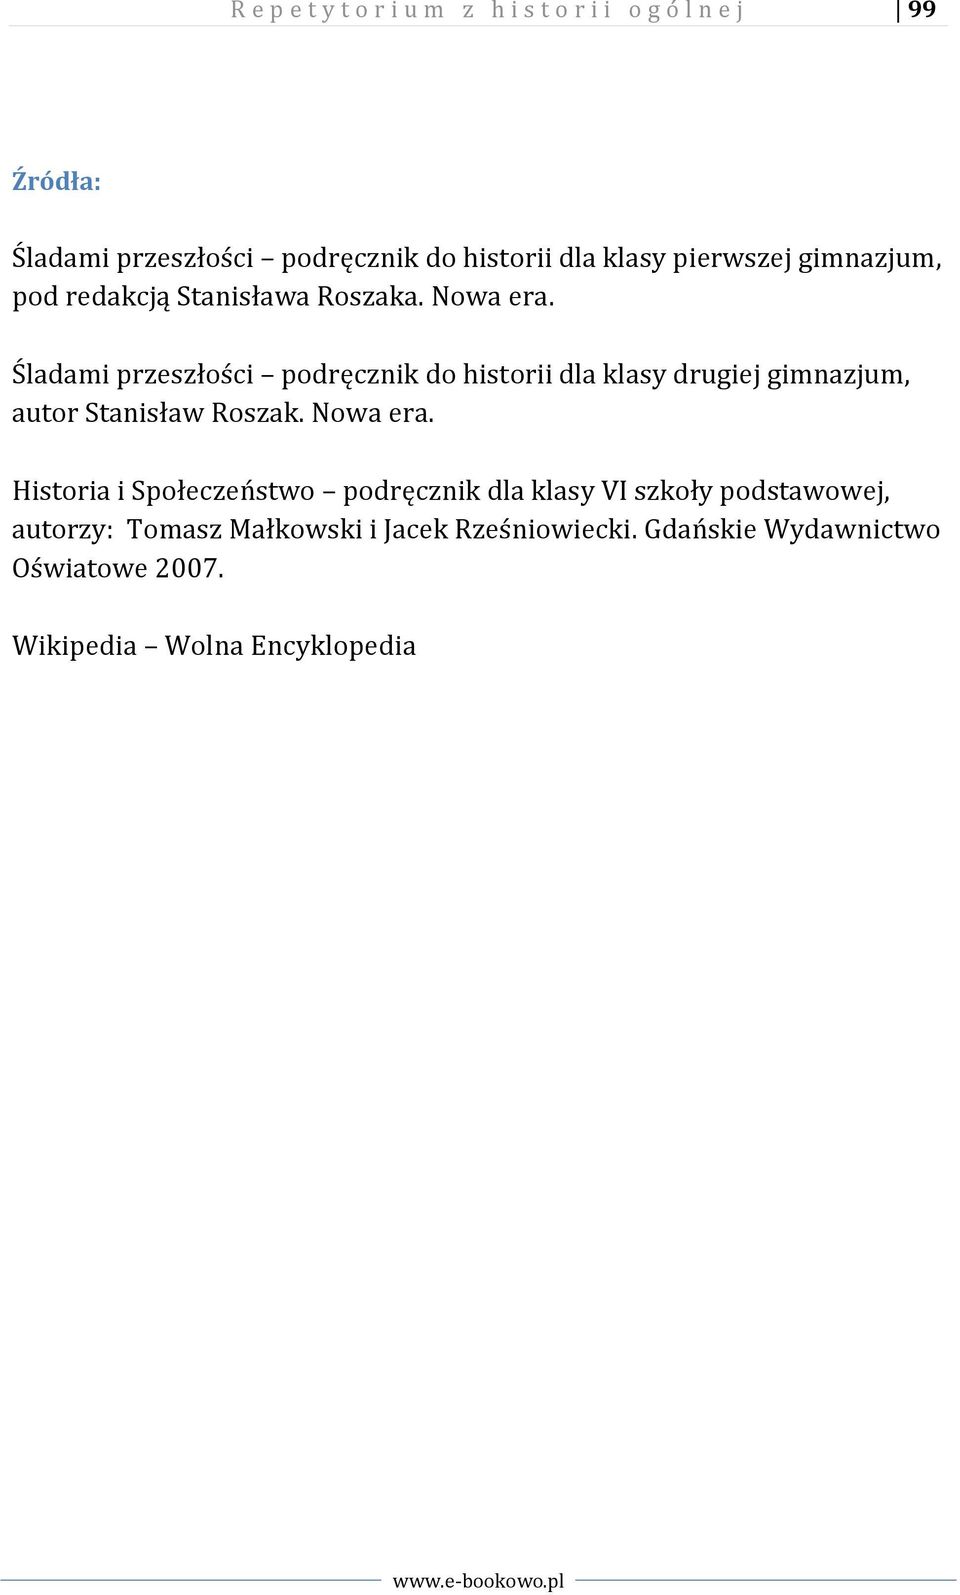 Śladami przeszłości podręcznik do historii dla klasy drugiej gimnazjum, autor Stanisław Roszak. Nowa era.